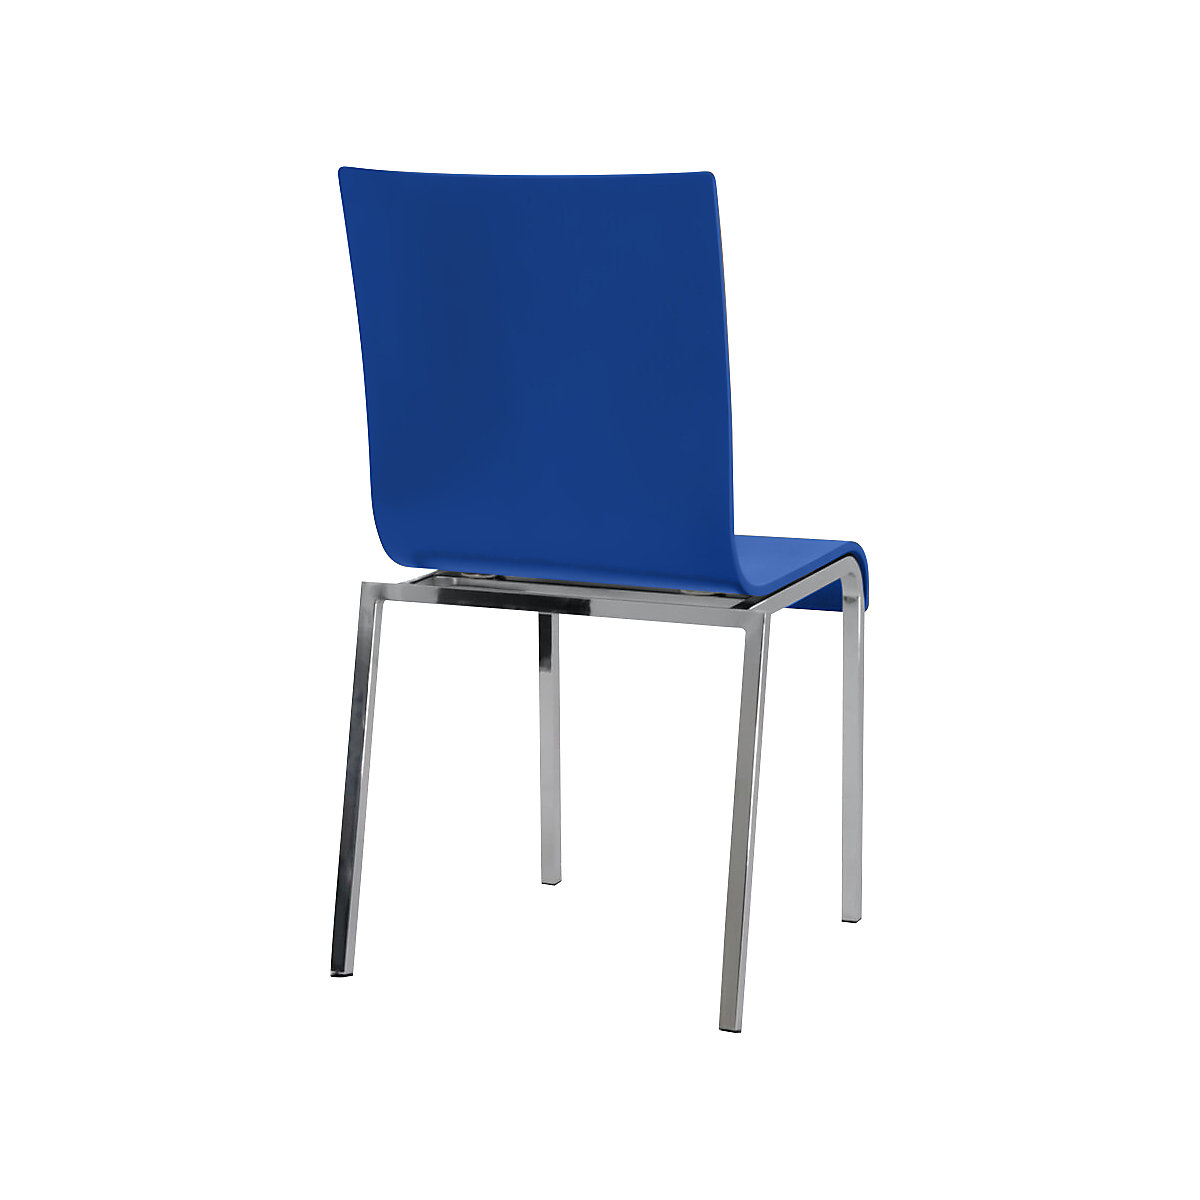 Cadeira de madeira em forma de concha CUBIC, AxLxP 860 x 450 x 520 mm, embalagem de 4 unid., concha azul